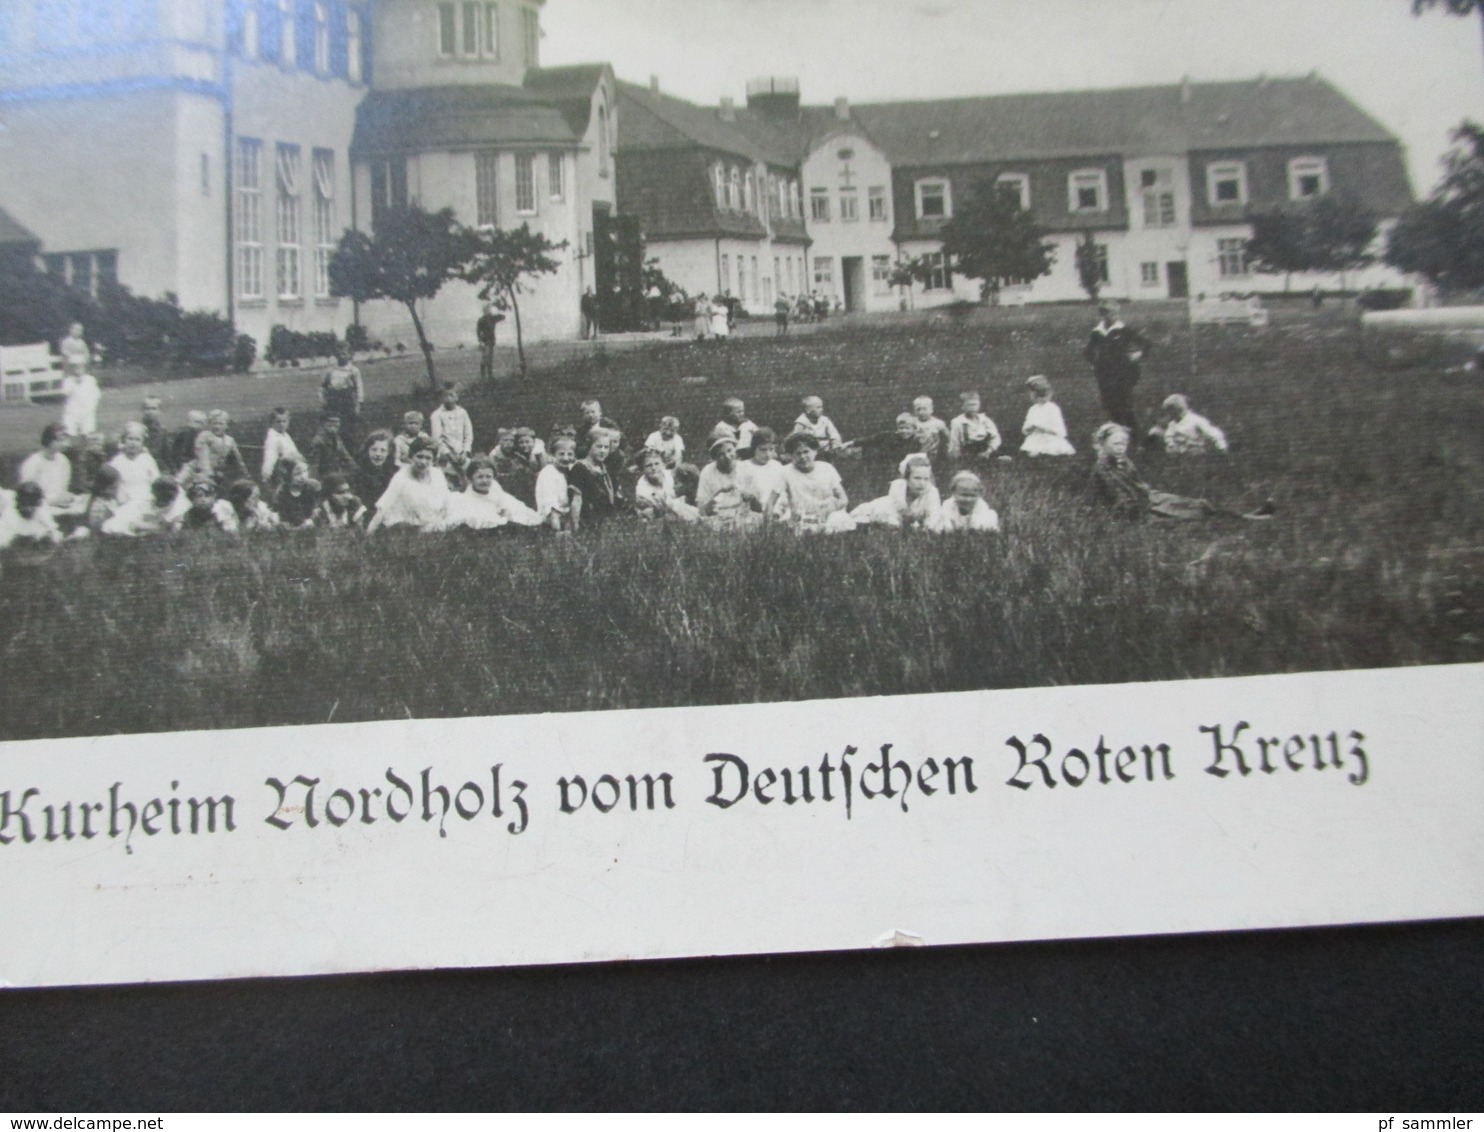 3.Reich Echtfoto AK Kindererholungs Und Kurheim Nordholz Vom Deutschen Roten Kreuz / DRK Nordholz Bei Cuxhaven - Rode Kruis